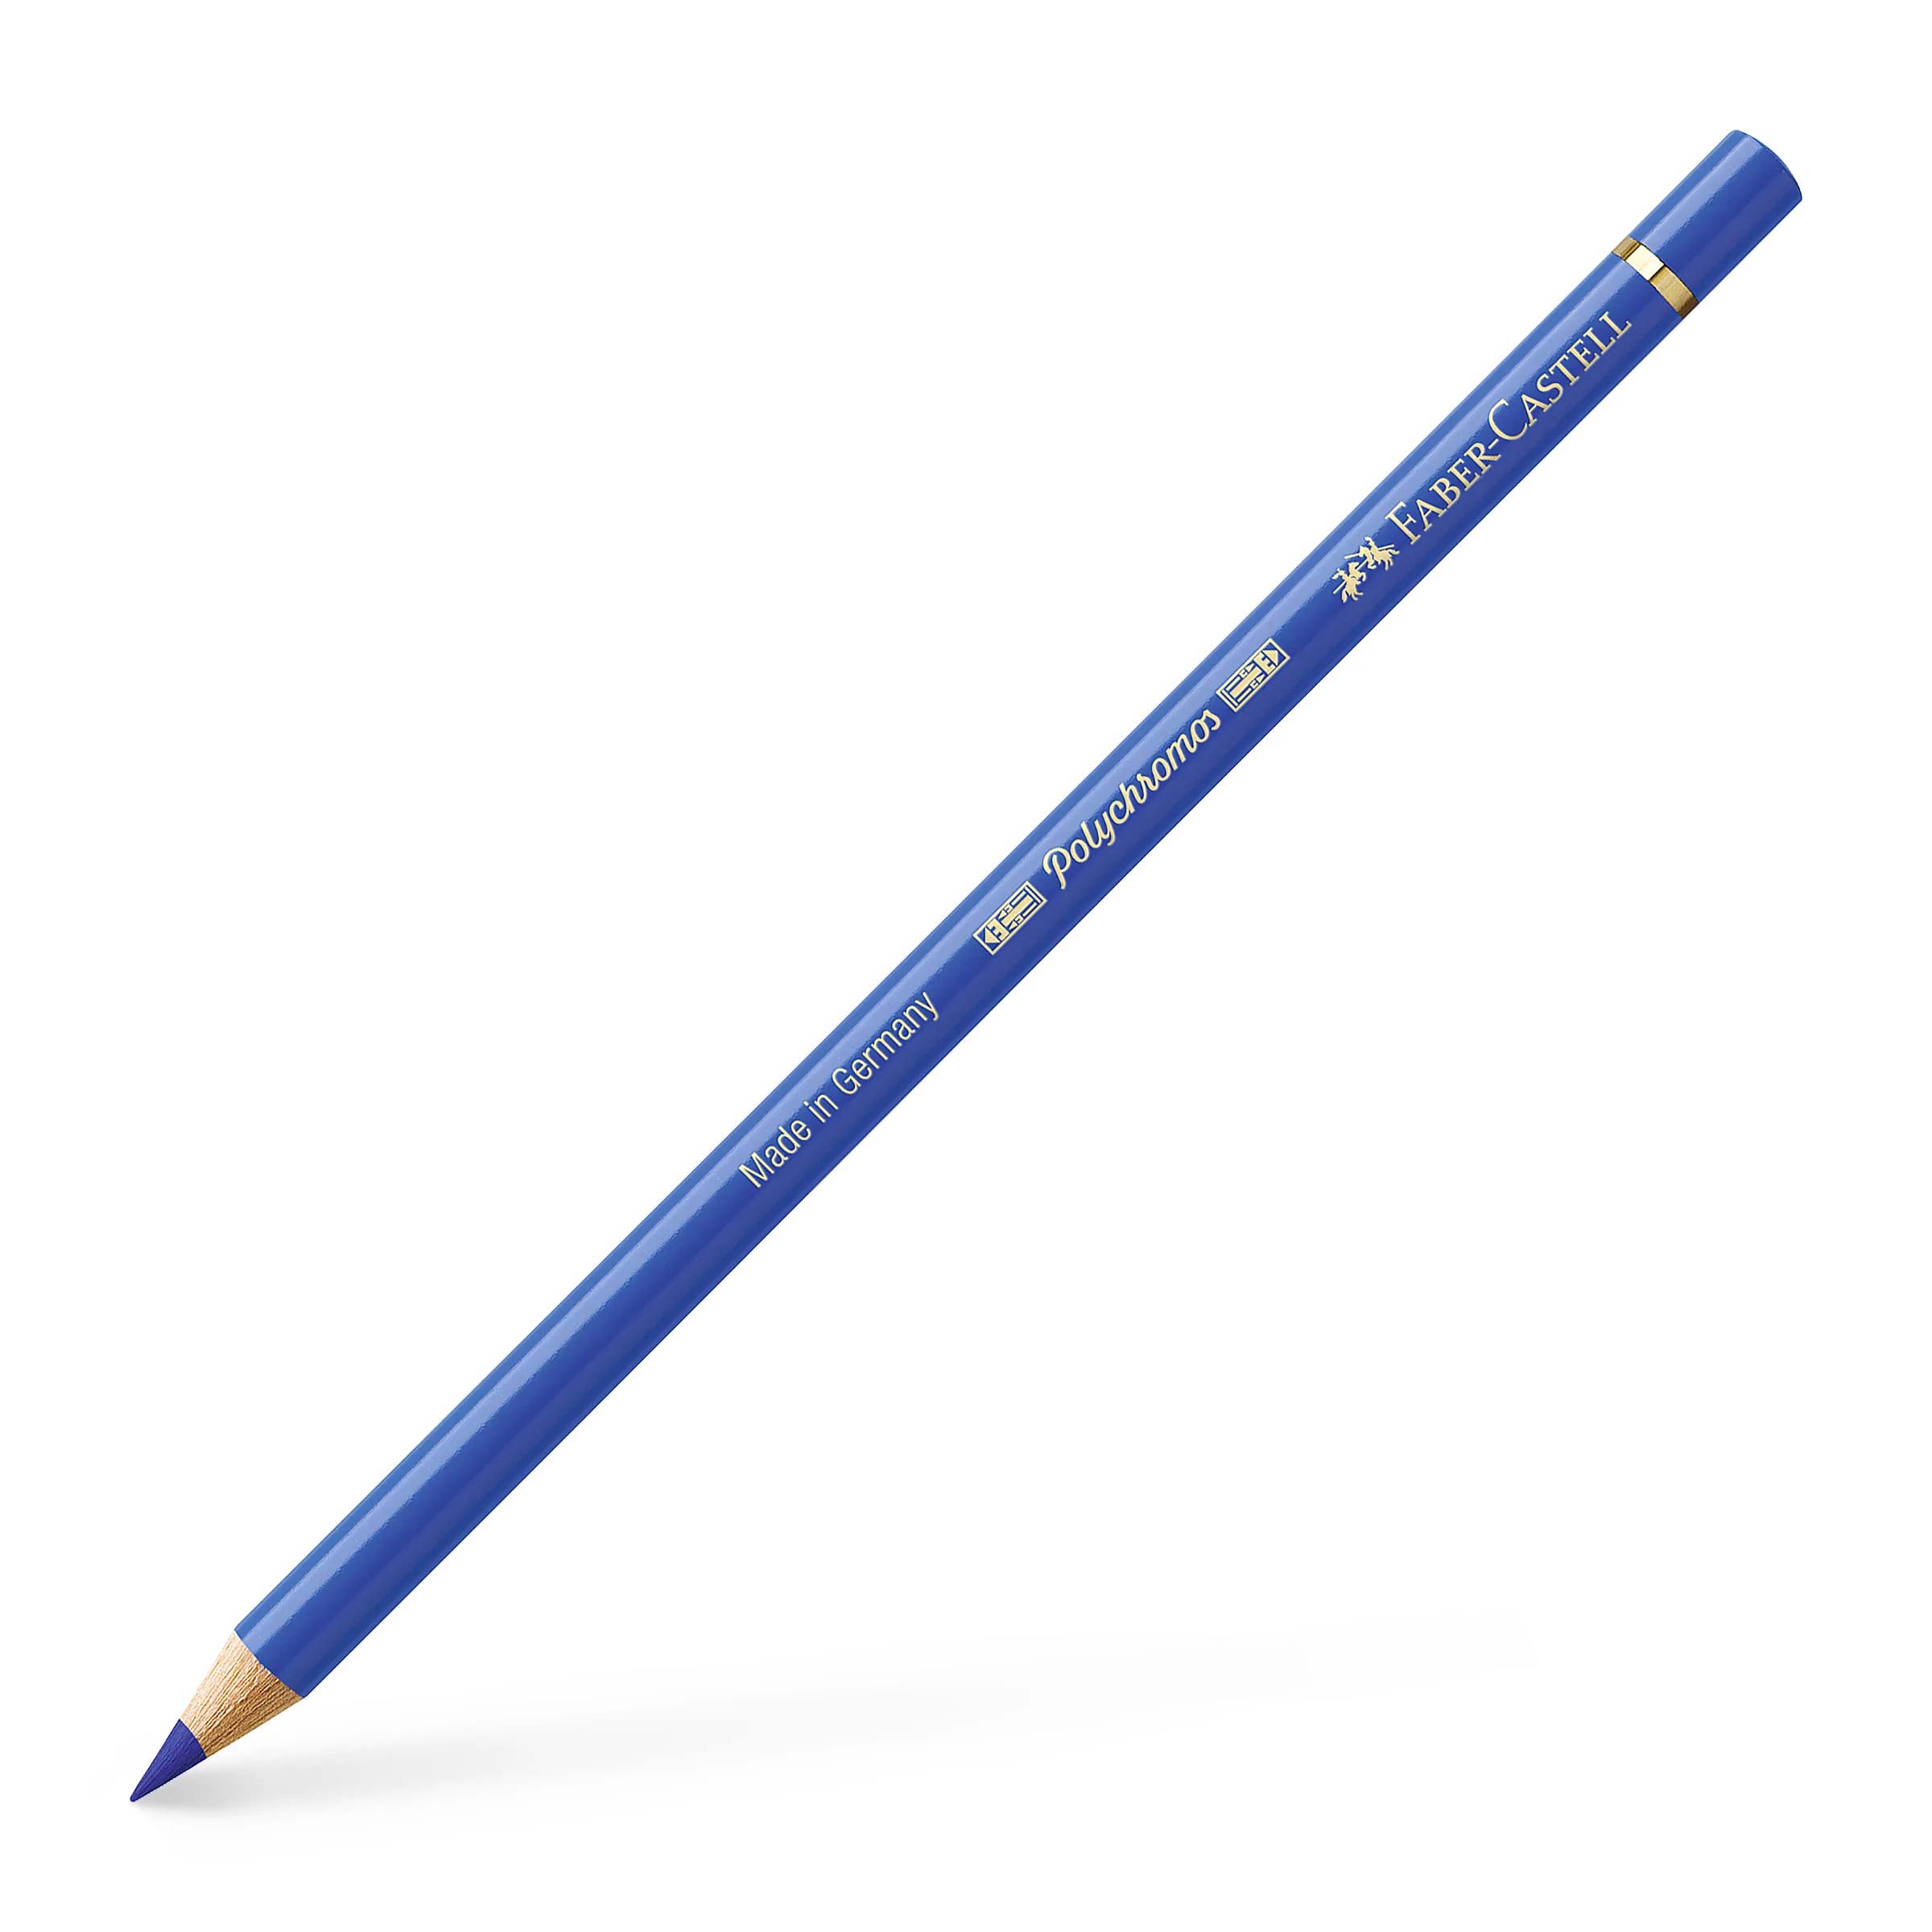 مداد رنگی 120 رنگ فابر کاستل پلی کروموس - جعبه فلزی